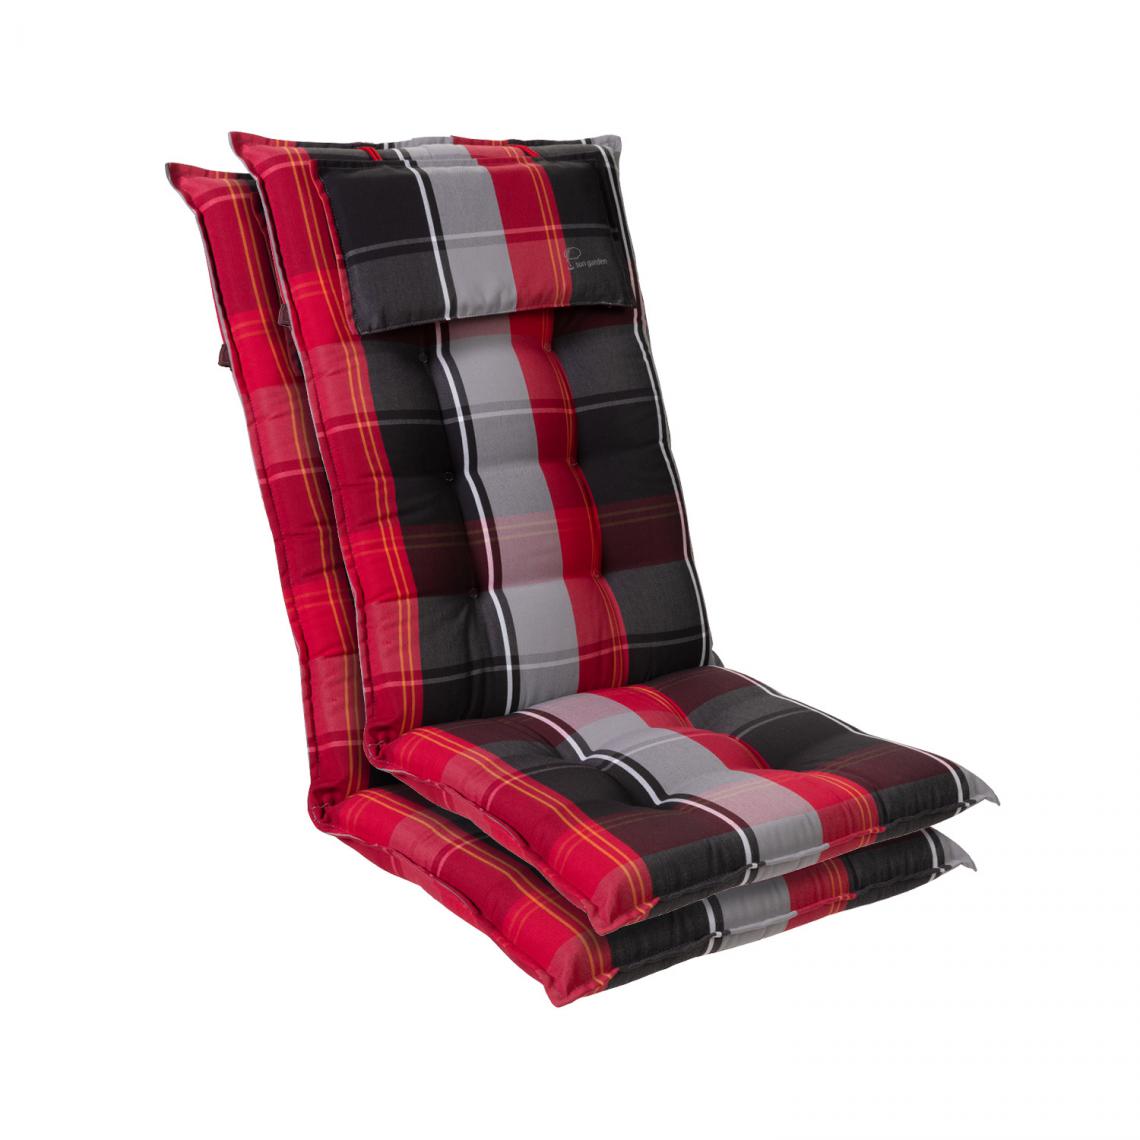 Blumfeldt - Coussin - Blumfeldt Sylt - Pour chaise de jardin à dossier haut avec appuie-tête - Polyester - 50x120x9cm - Lot de 2 - Rouge/Noir - Coussins, galettes de jardin